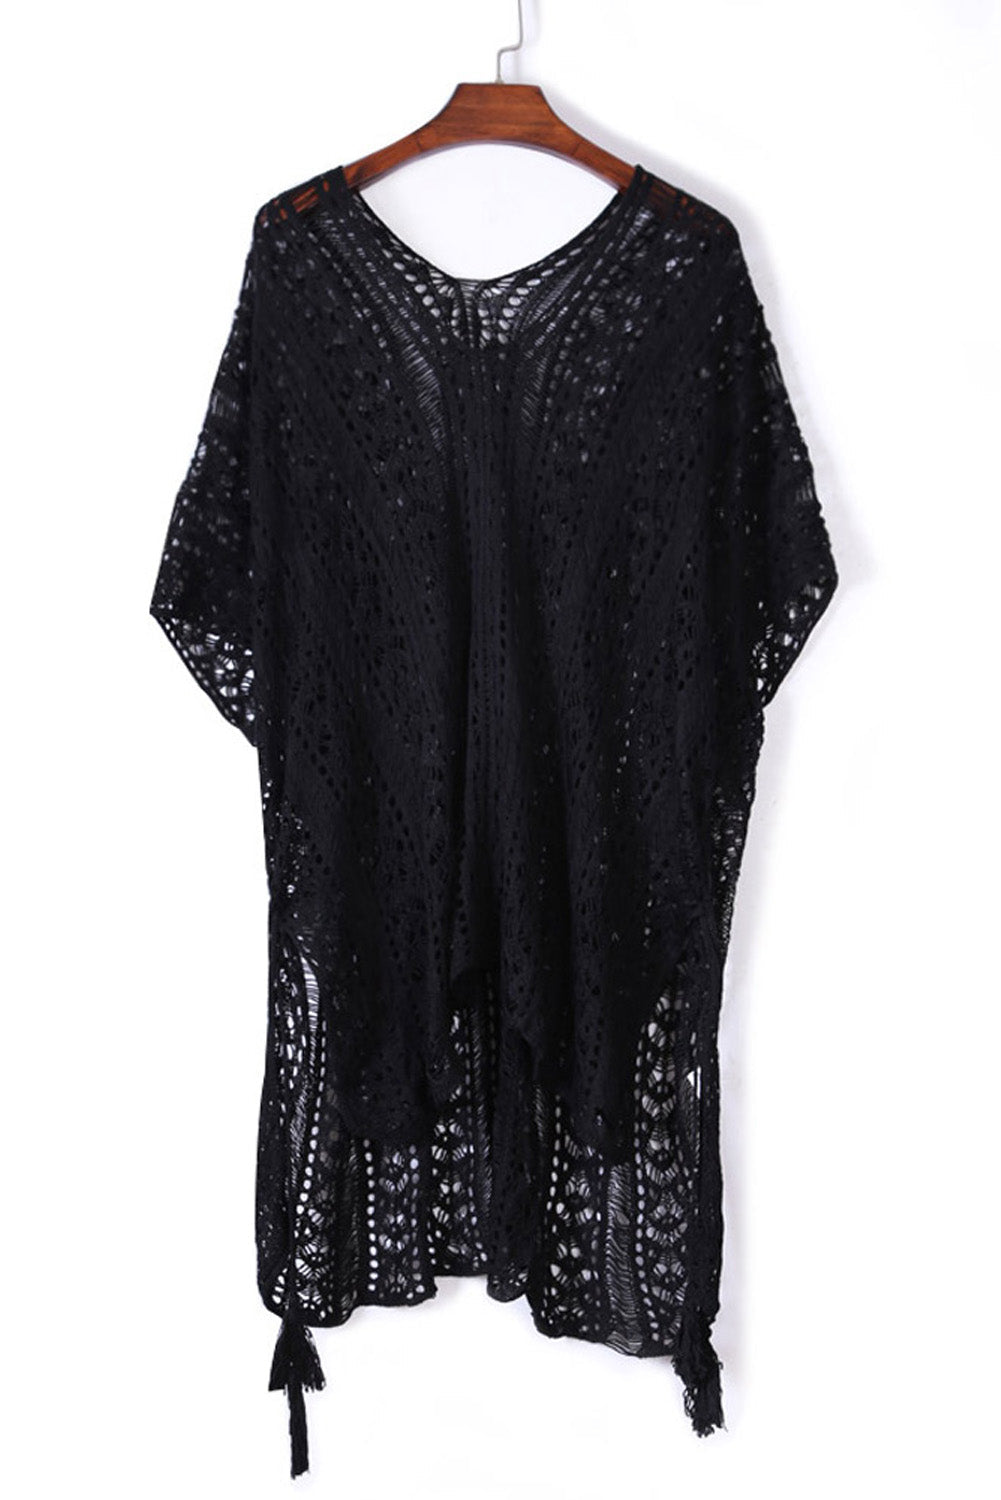 Black Crochet Knitted Tassel Tie Kimono Beachwear